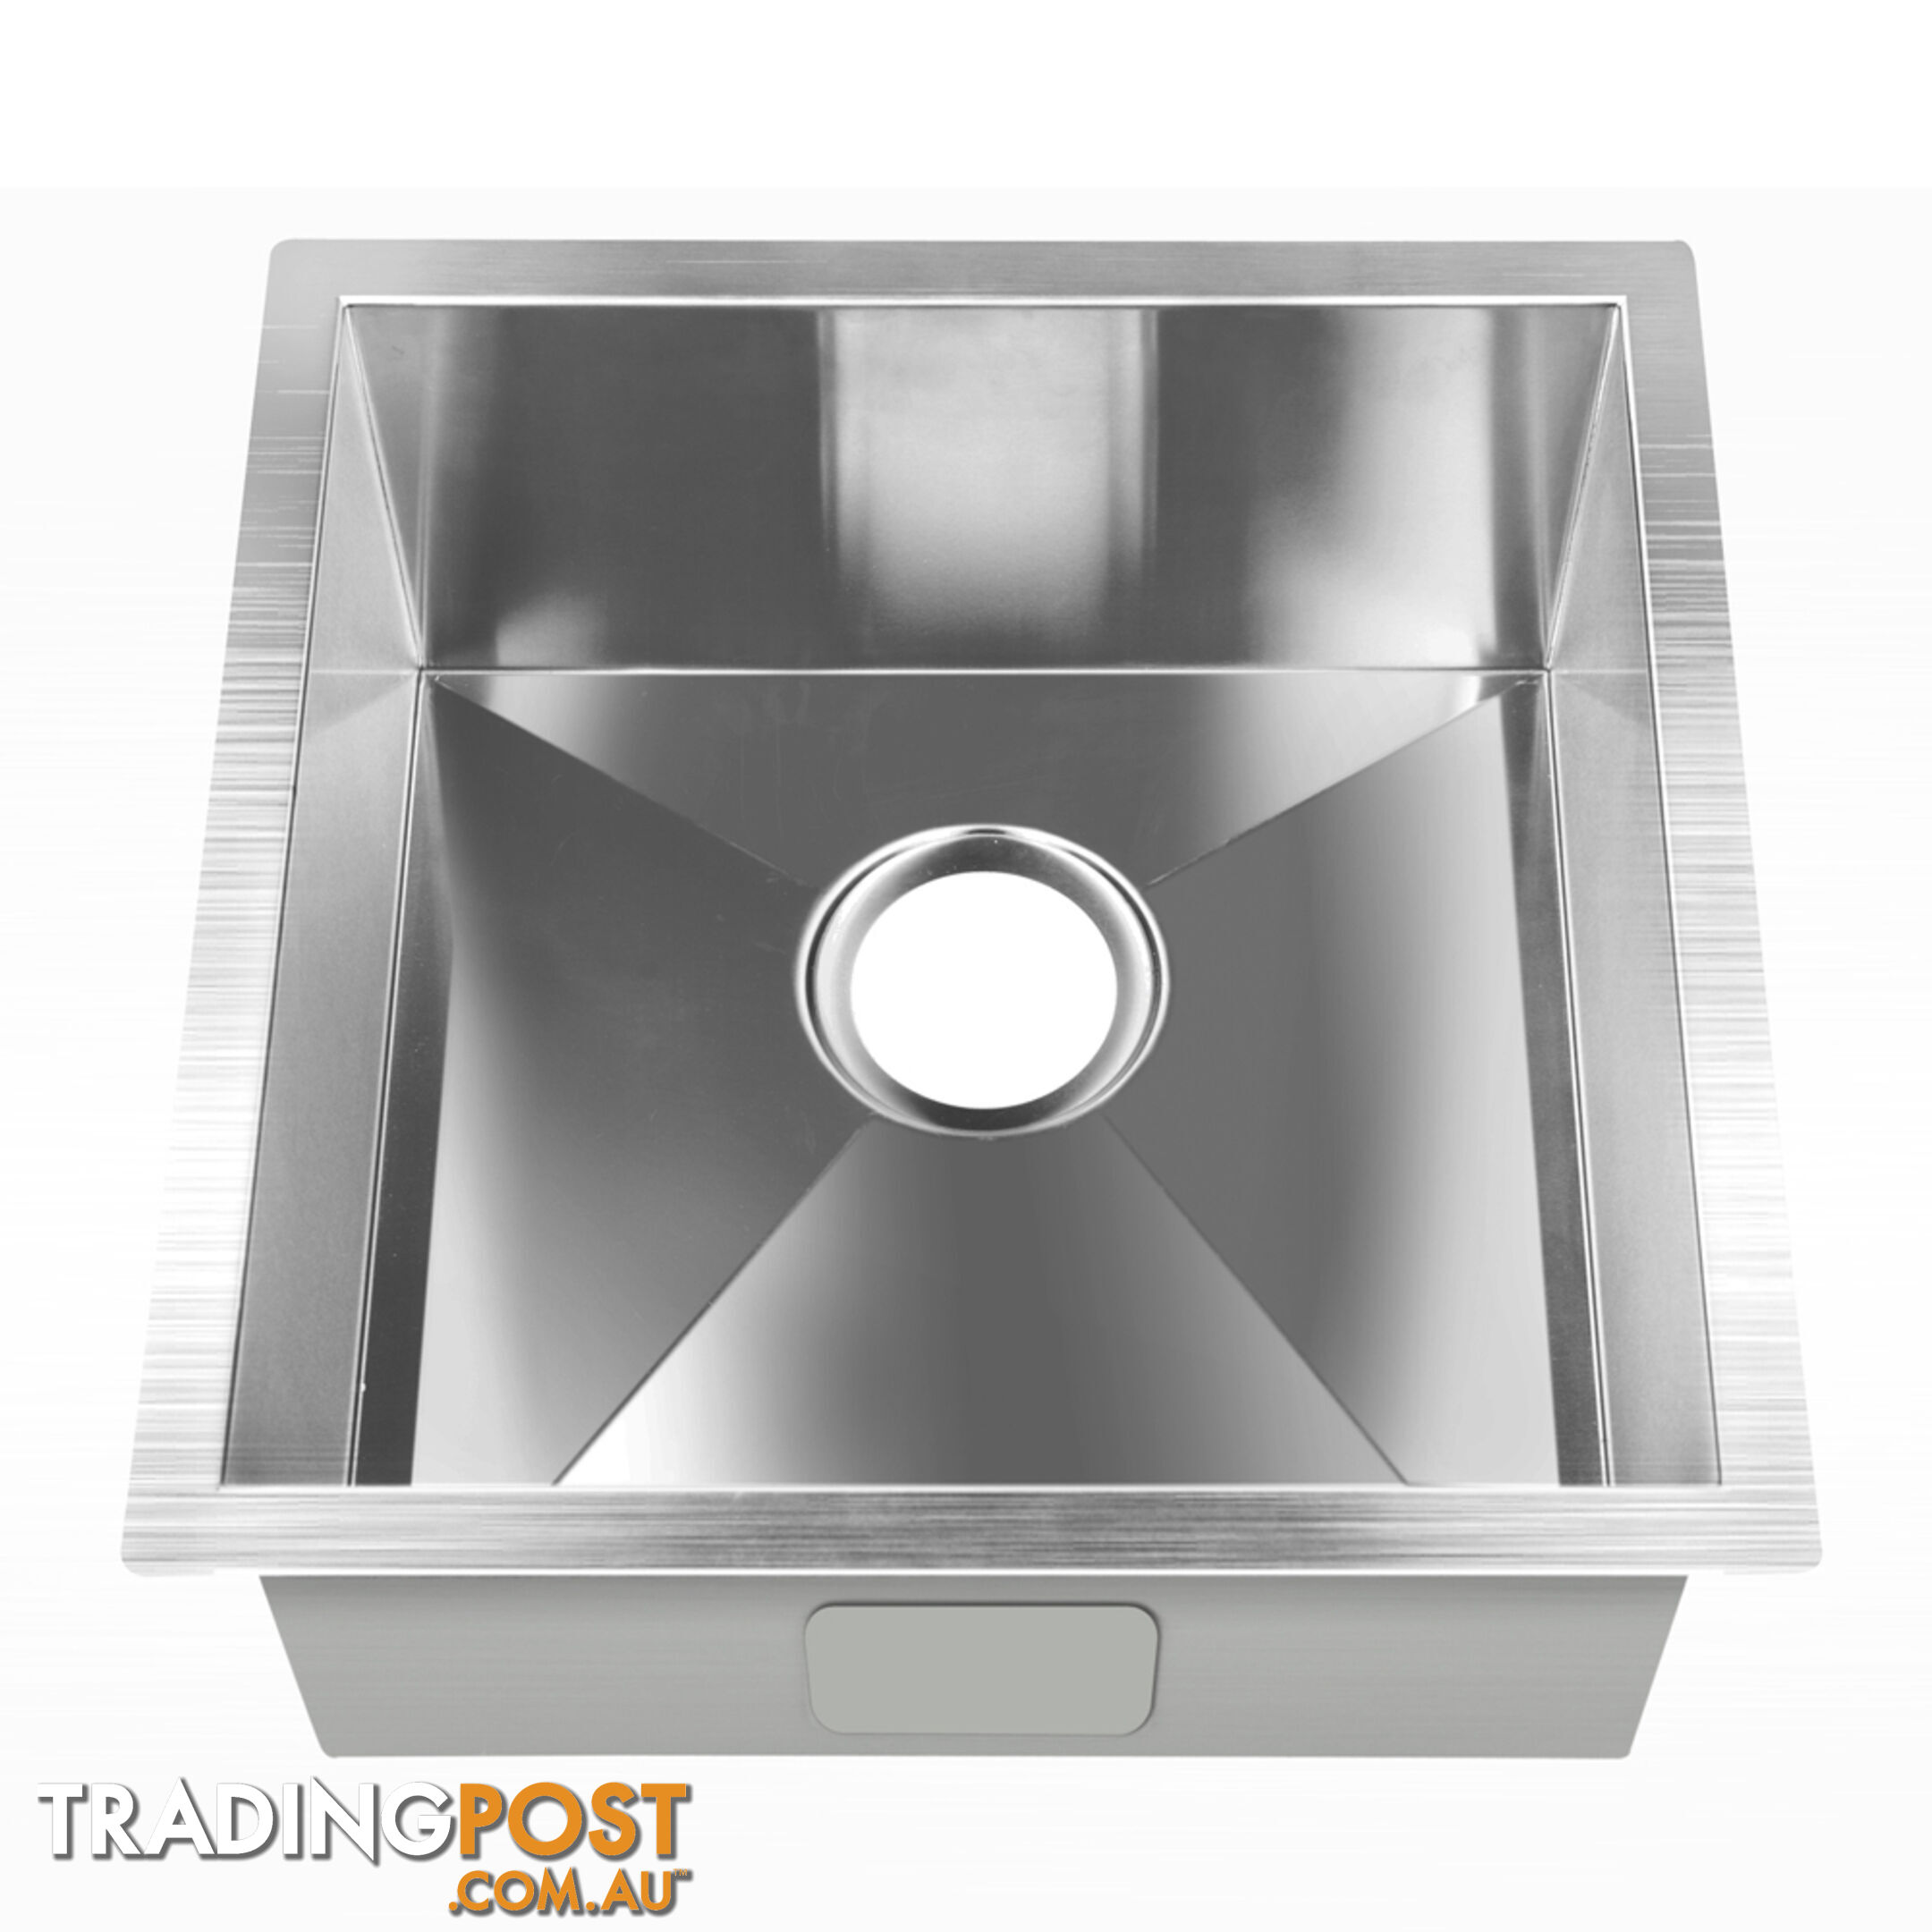 Stainless Steel Kitchen/Laundry Sink w/ Strainer Waste 440 x 440 mm